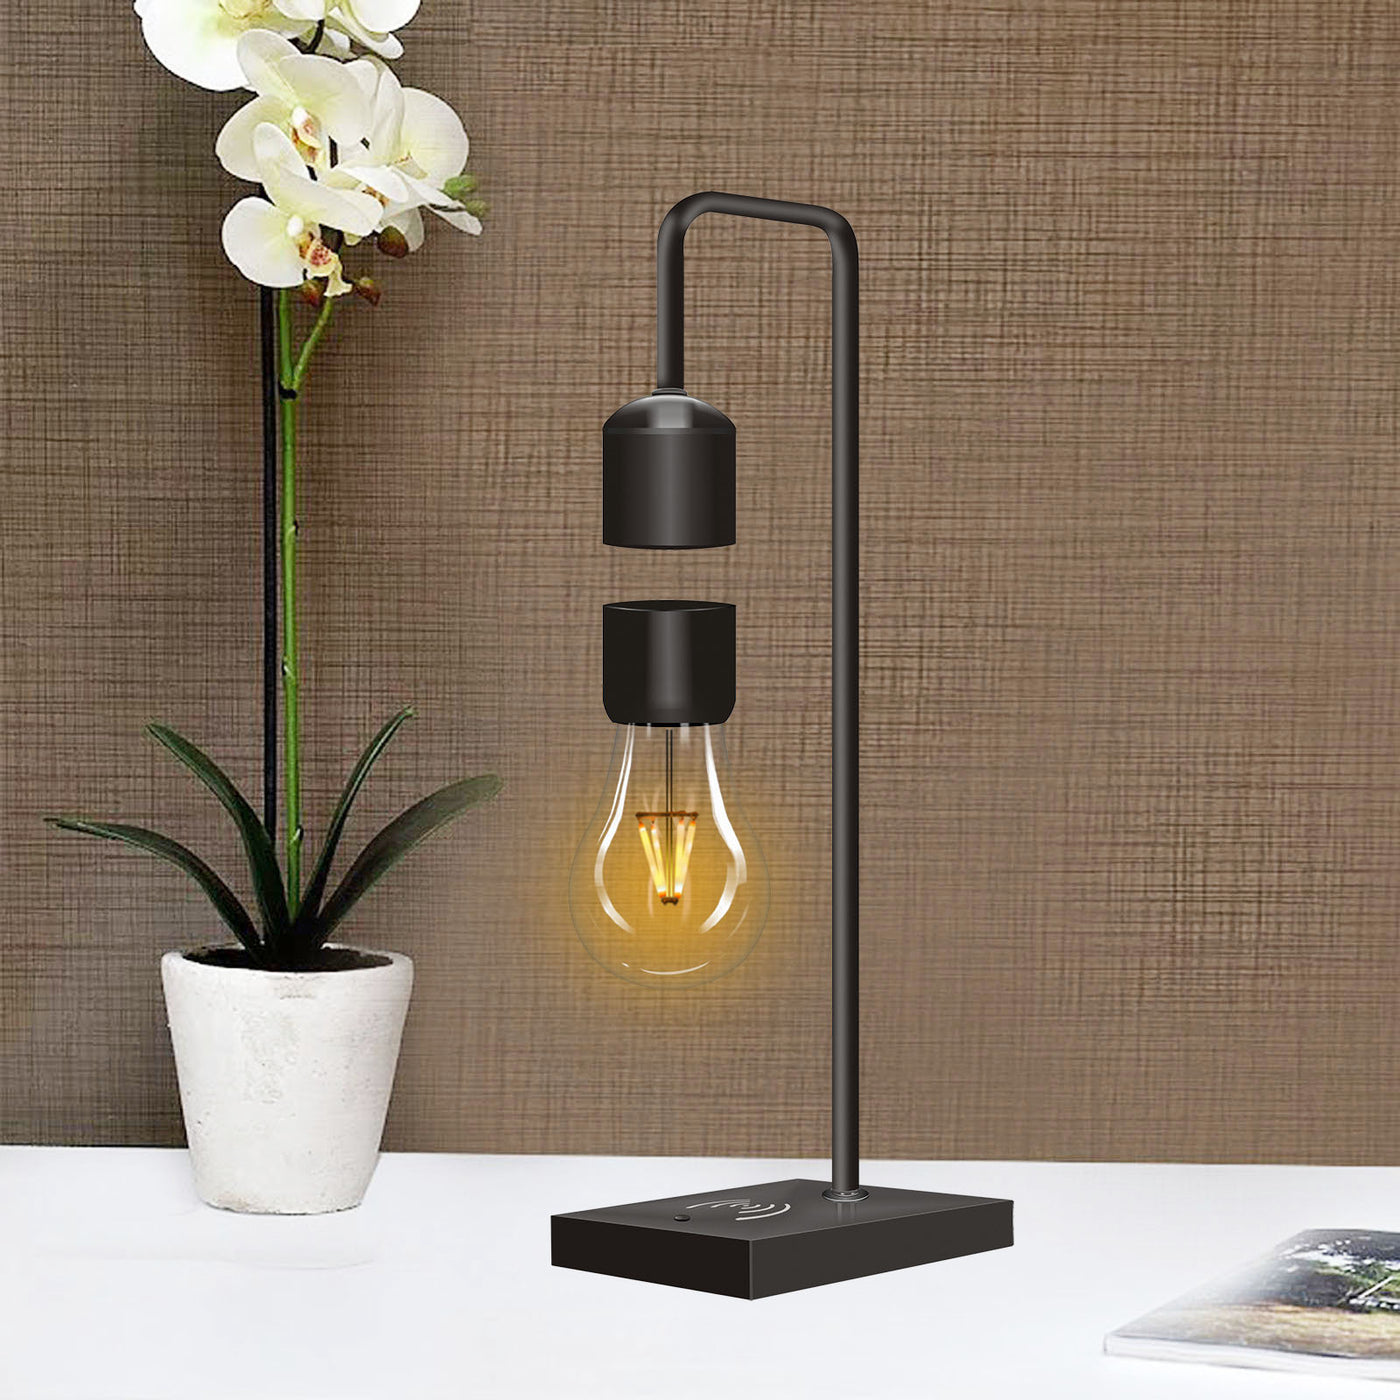 LANGTU Tisch-Schreibtisch-Smart-Lampe mit magnetschwebender, schwebender, kabelloser LED-Glühbirne und kabelloser Ladestation, schwarz